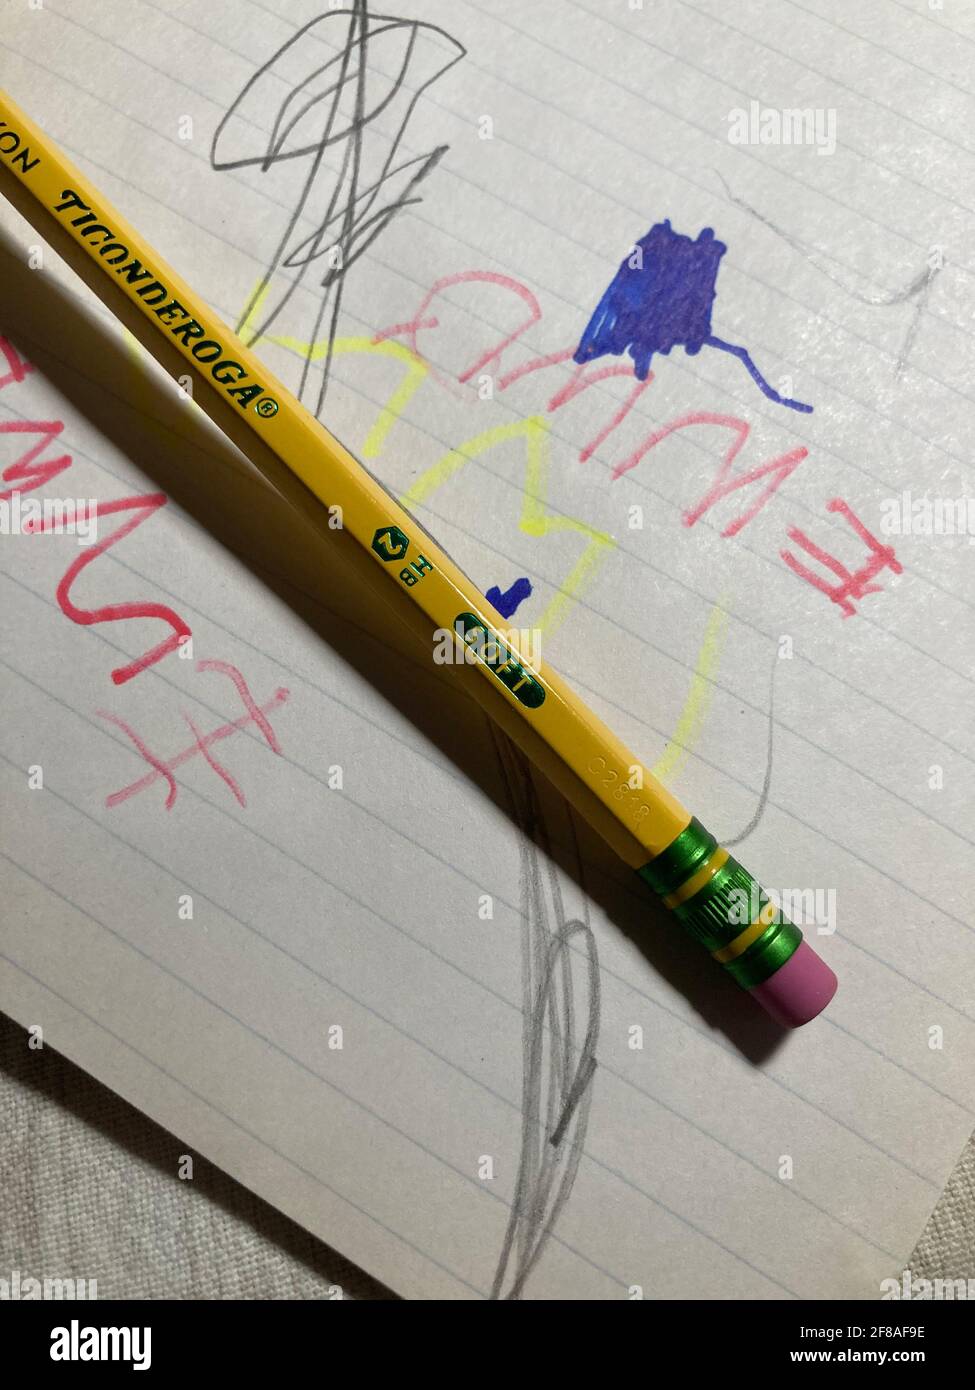 Crayon à mine de plomb sur papier d'écriture Banque D'Images